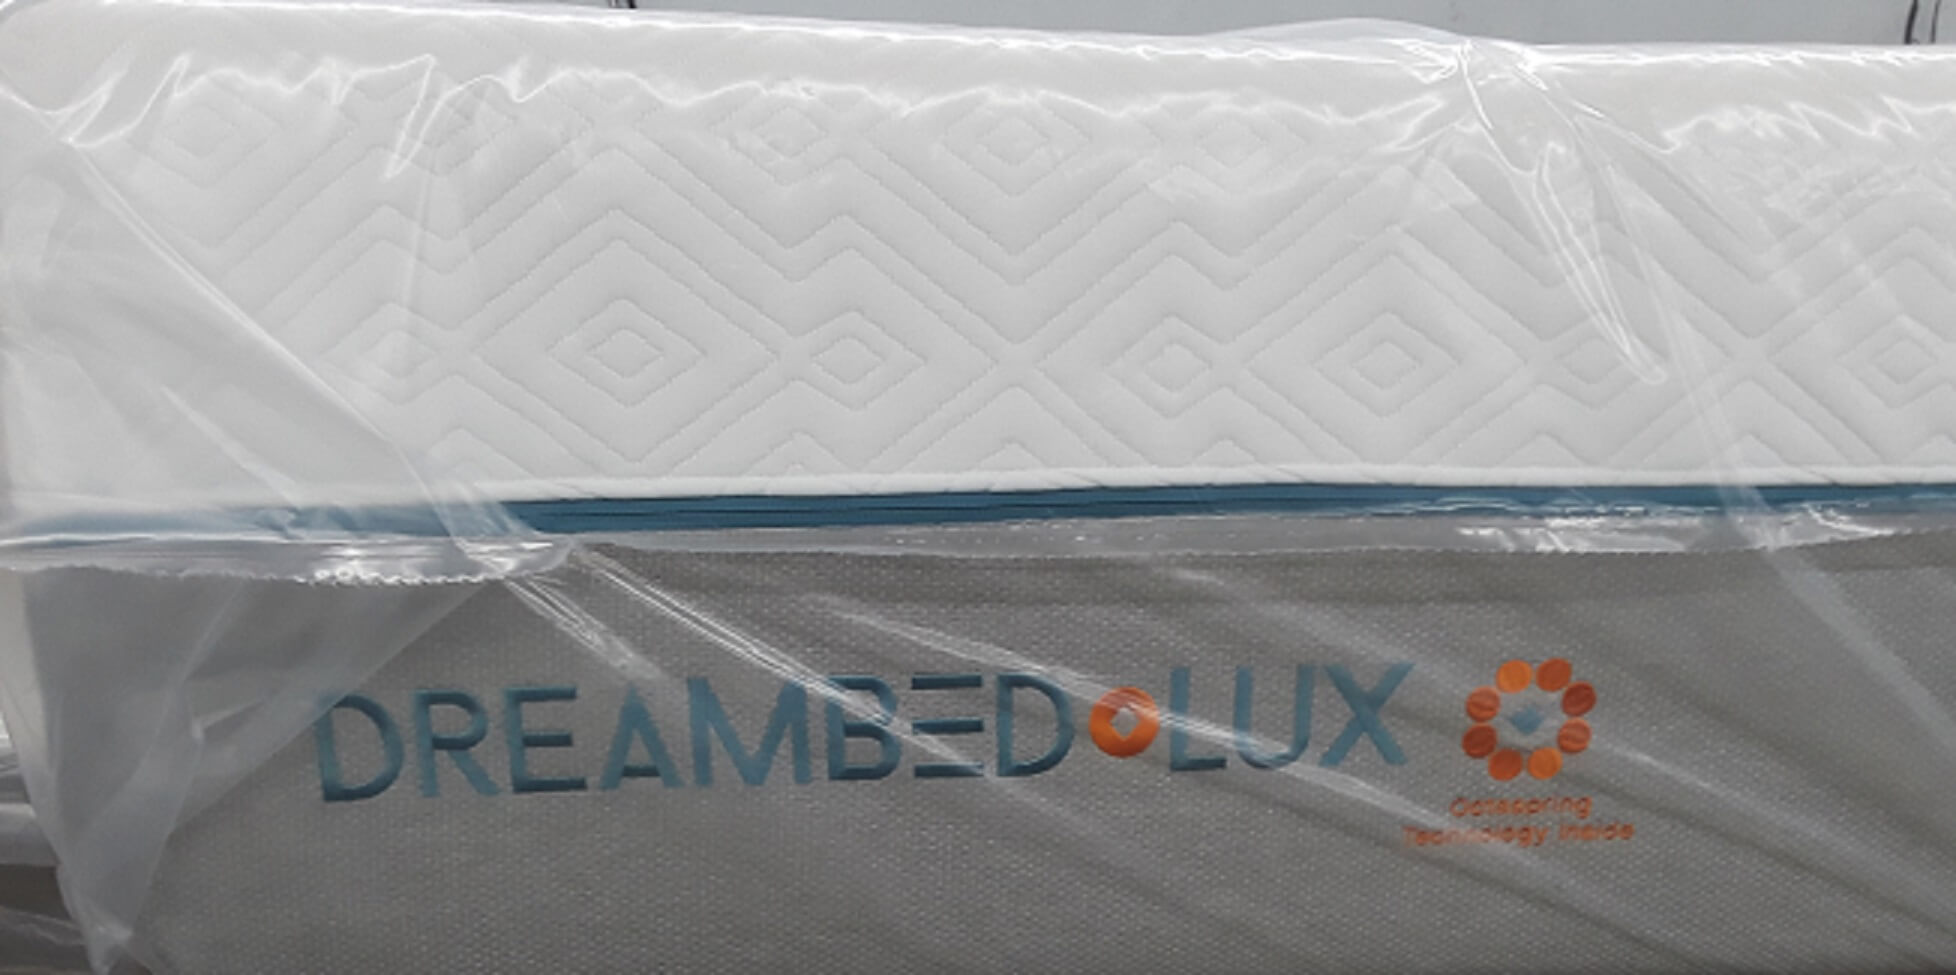 dream bed lux lx710 mattress